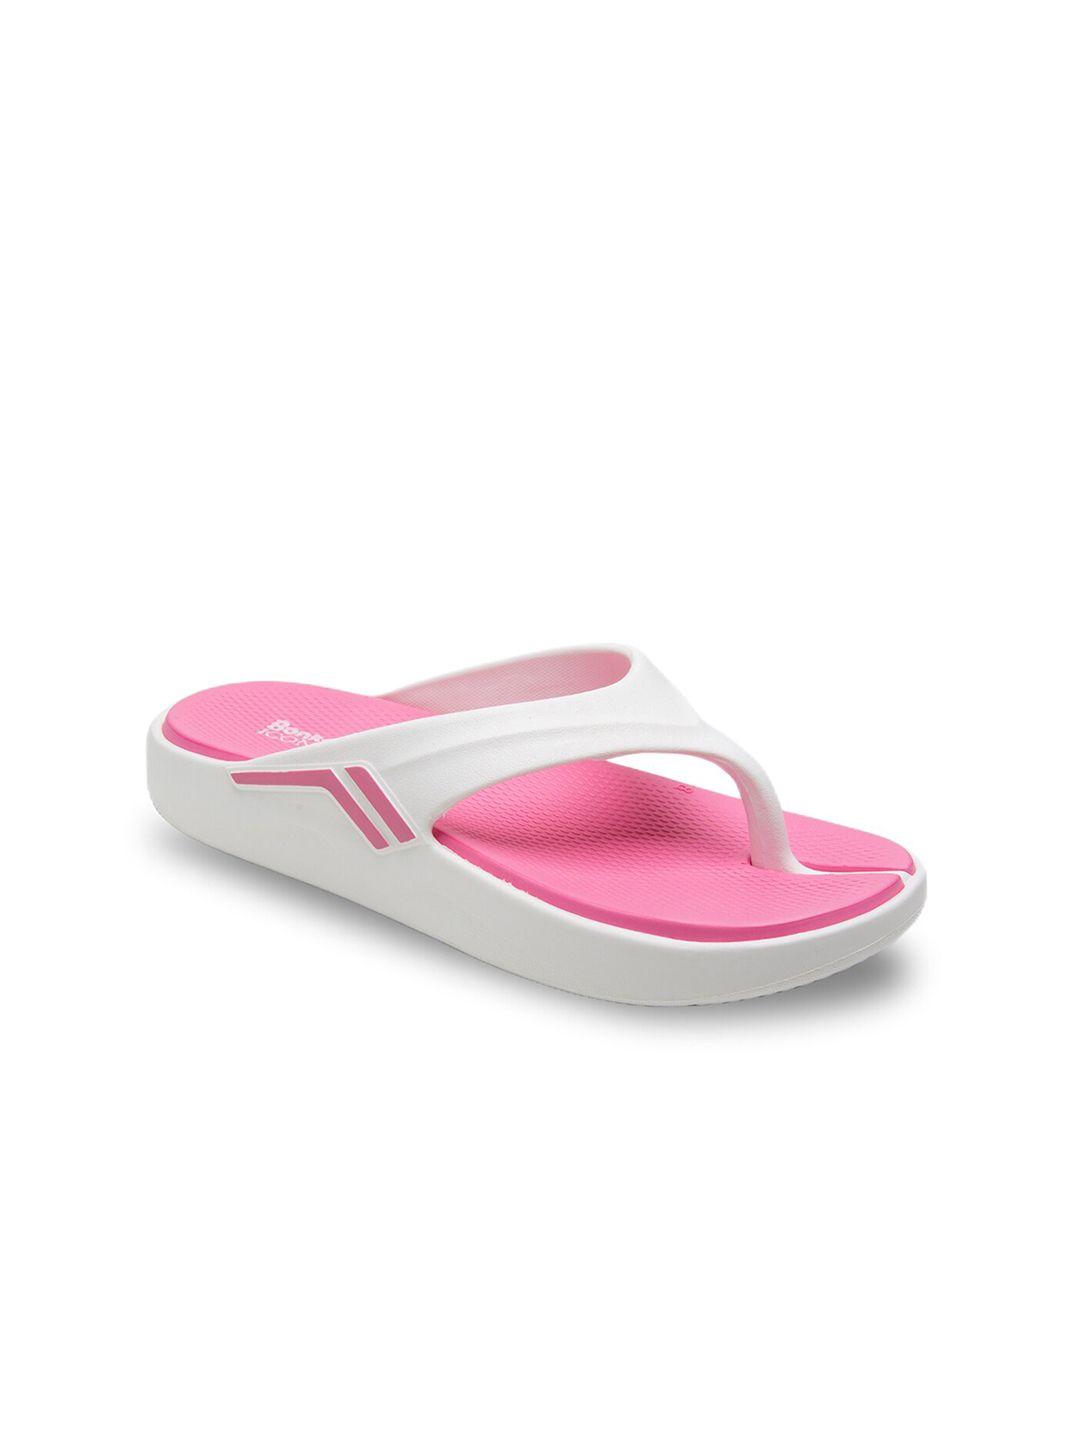 bonkerz-women-white-&-pink-croslite-thong-flip-flops